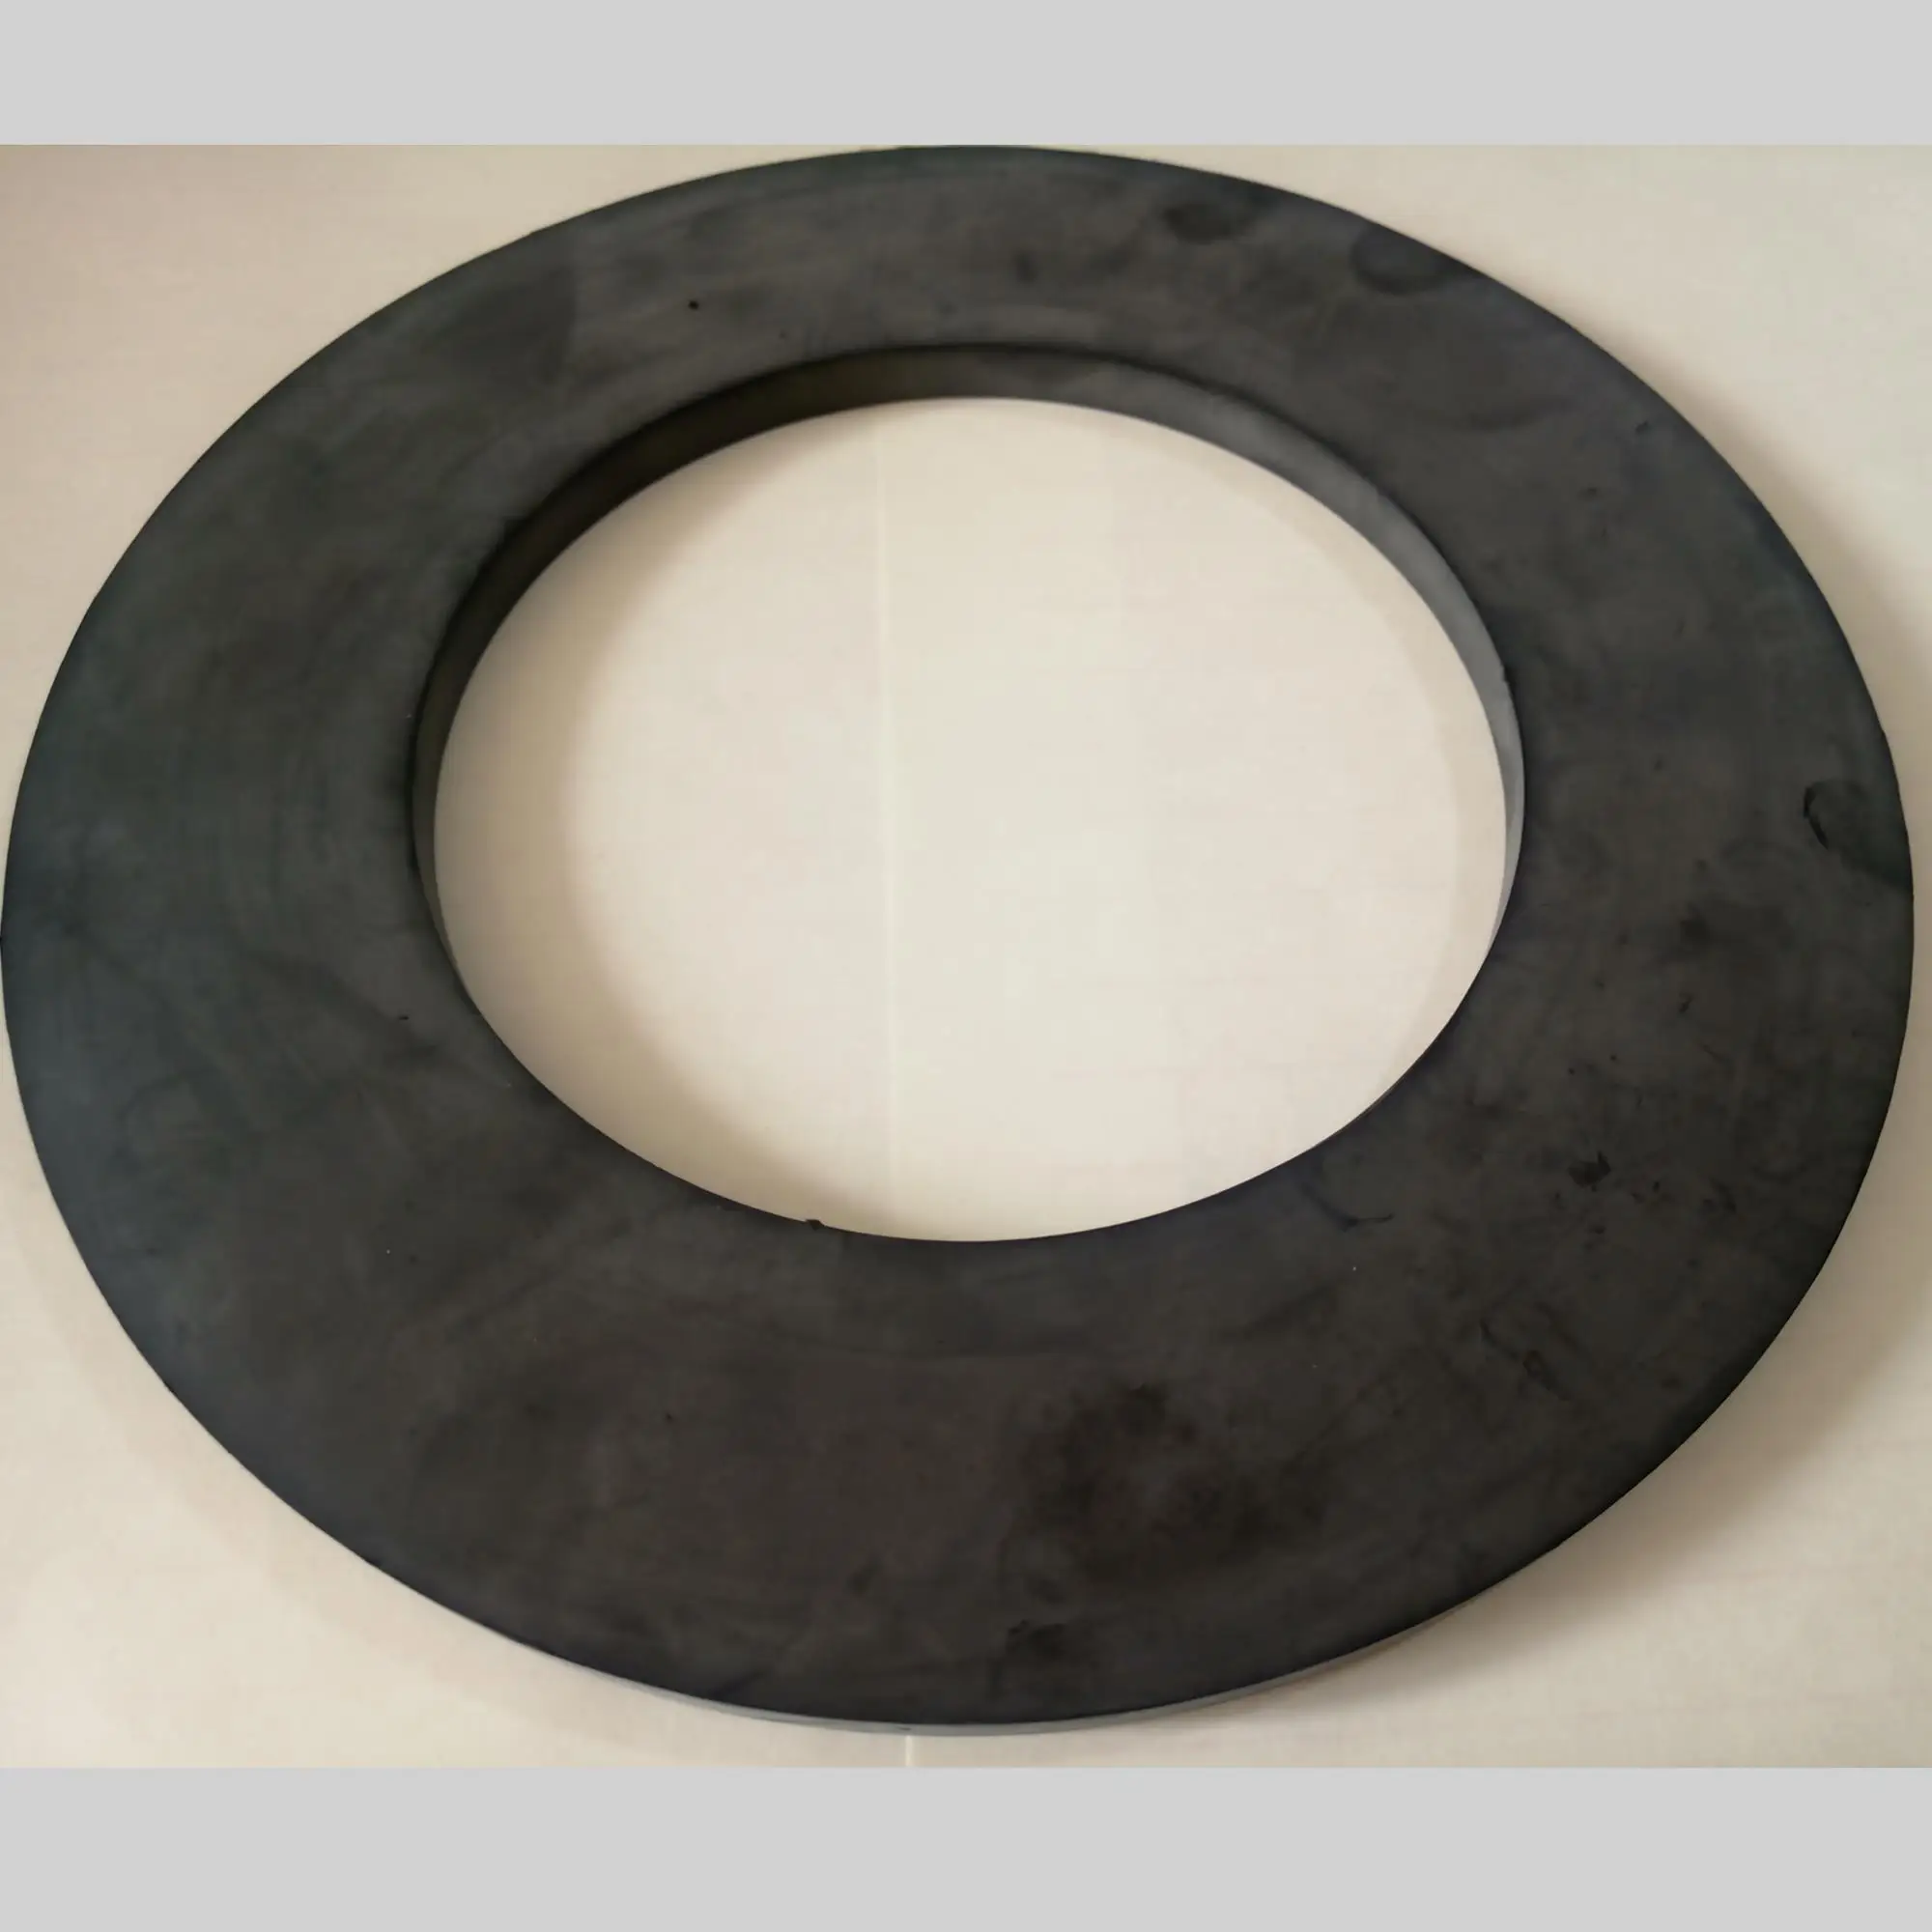 EPDM/SBR/NBR rubber flange gasket for sealing